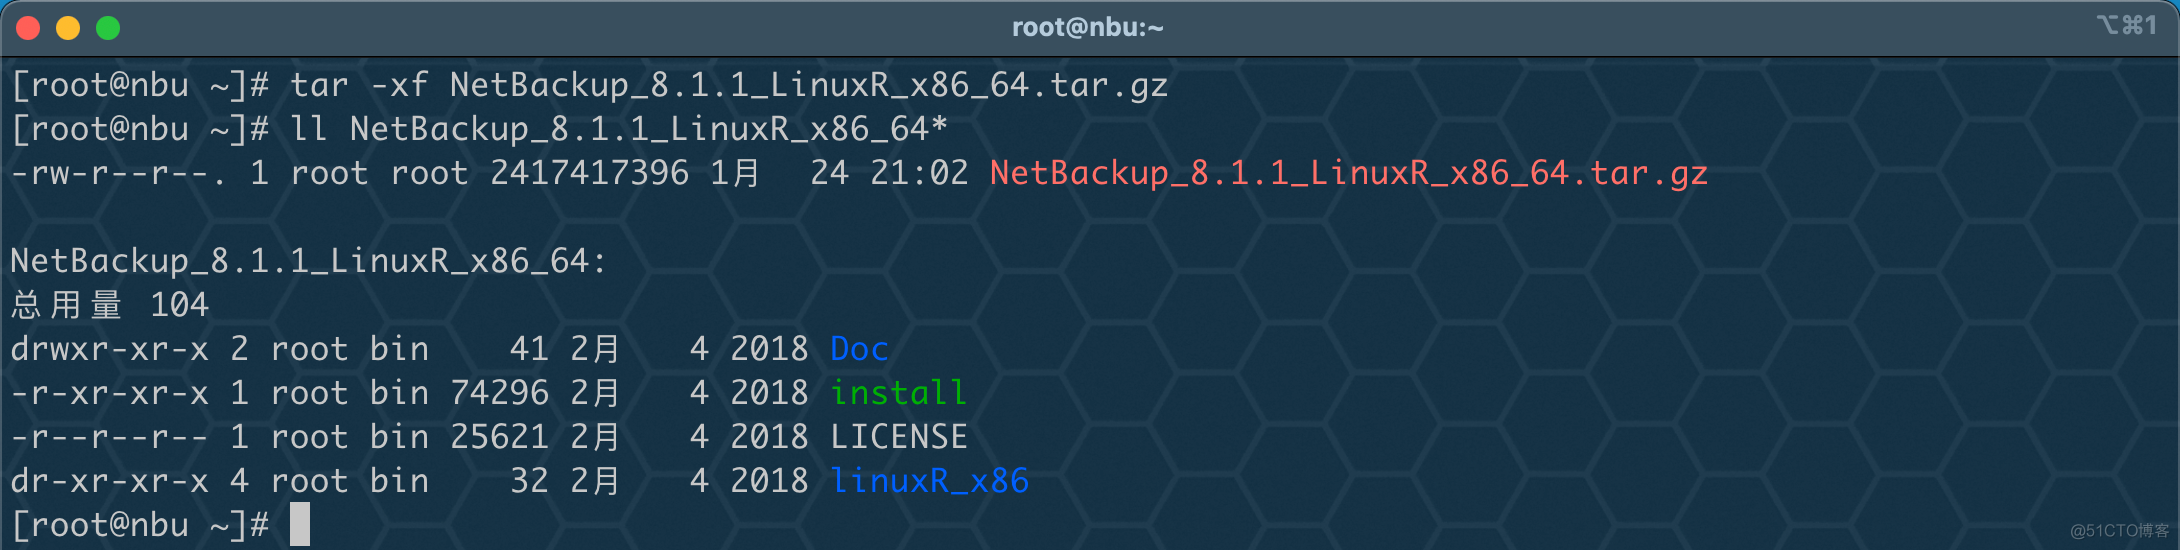 虚拟机玩转 Veritas NetBackup（NBU）之服务端安装部署_安装包_07